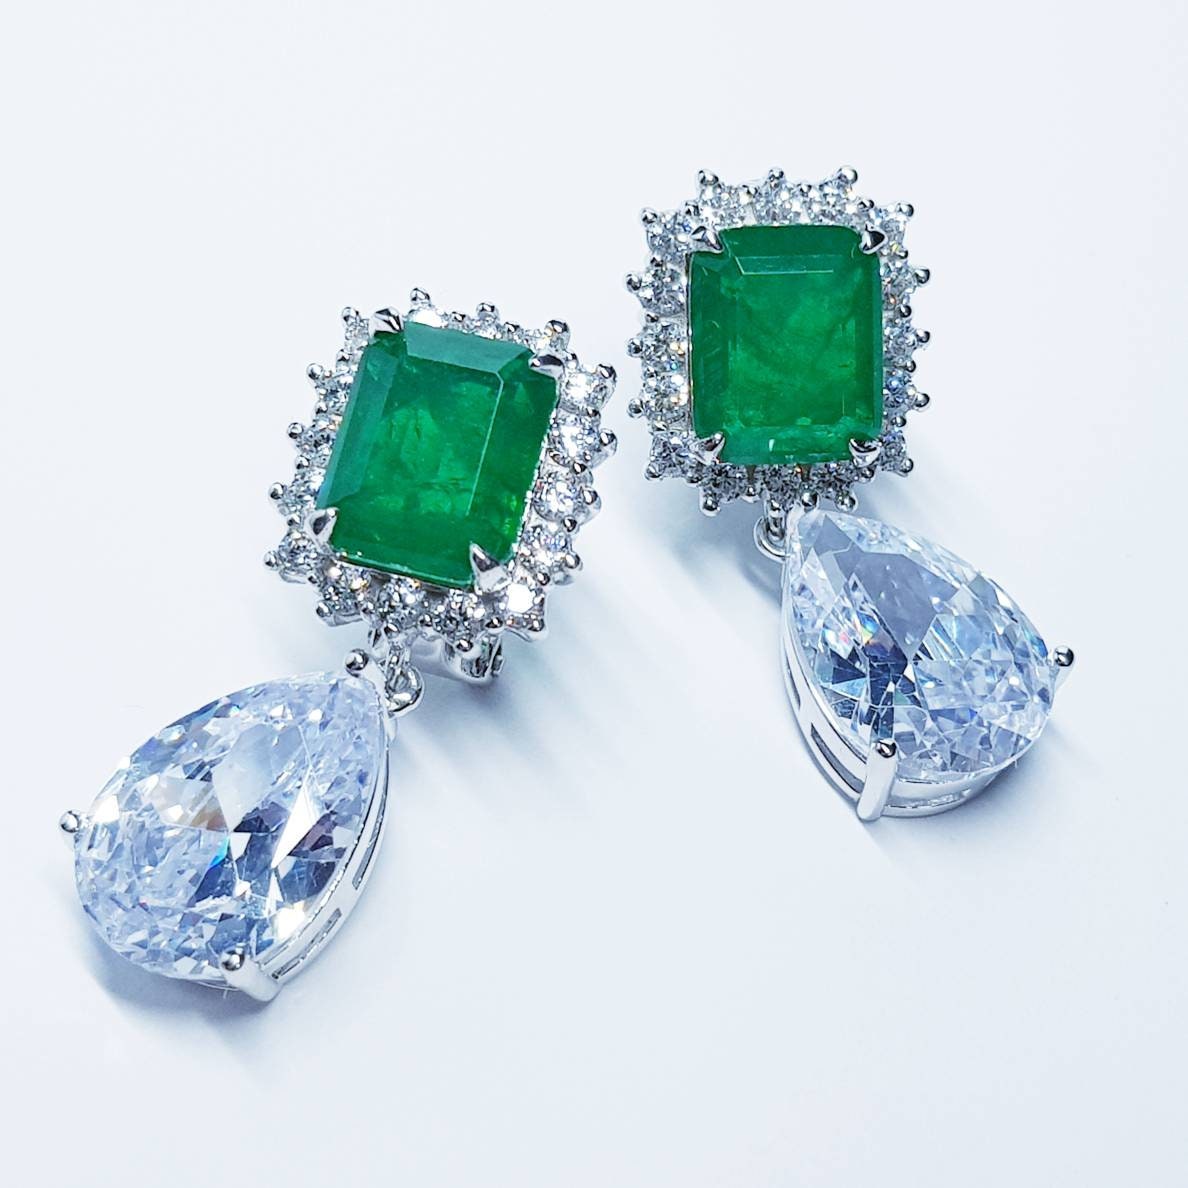 Stunning Emerald drop earrings, green earrings, green leverback earring, diamond teardrop earrings, gifts for her, green dress earrings